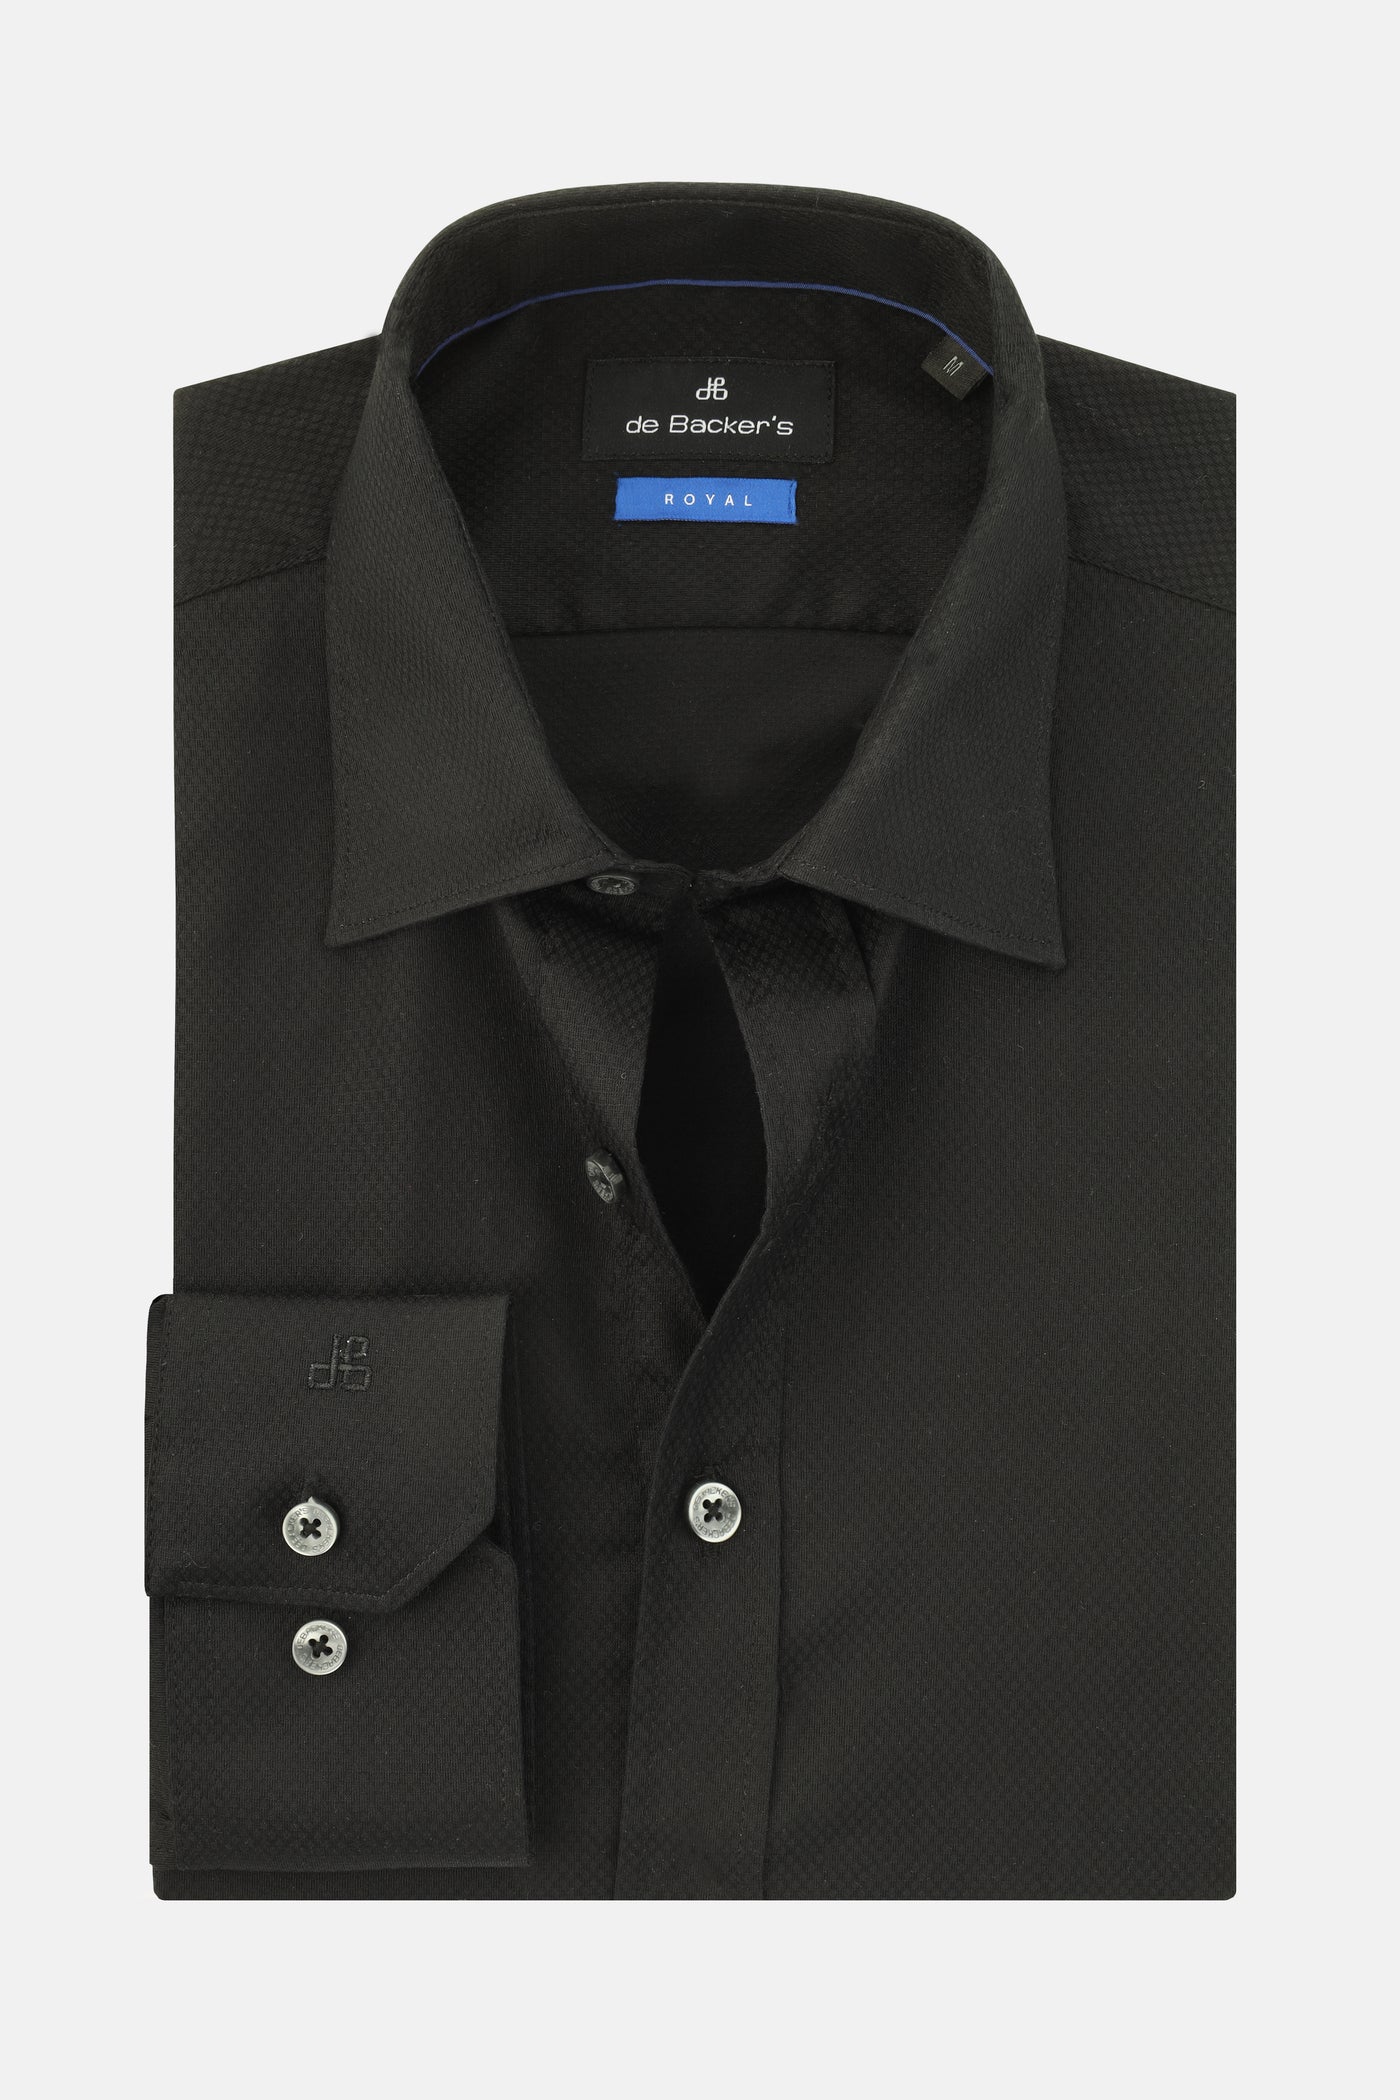 Jacquard Black Cotton Simi Classic Shirt